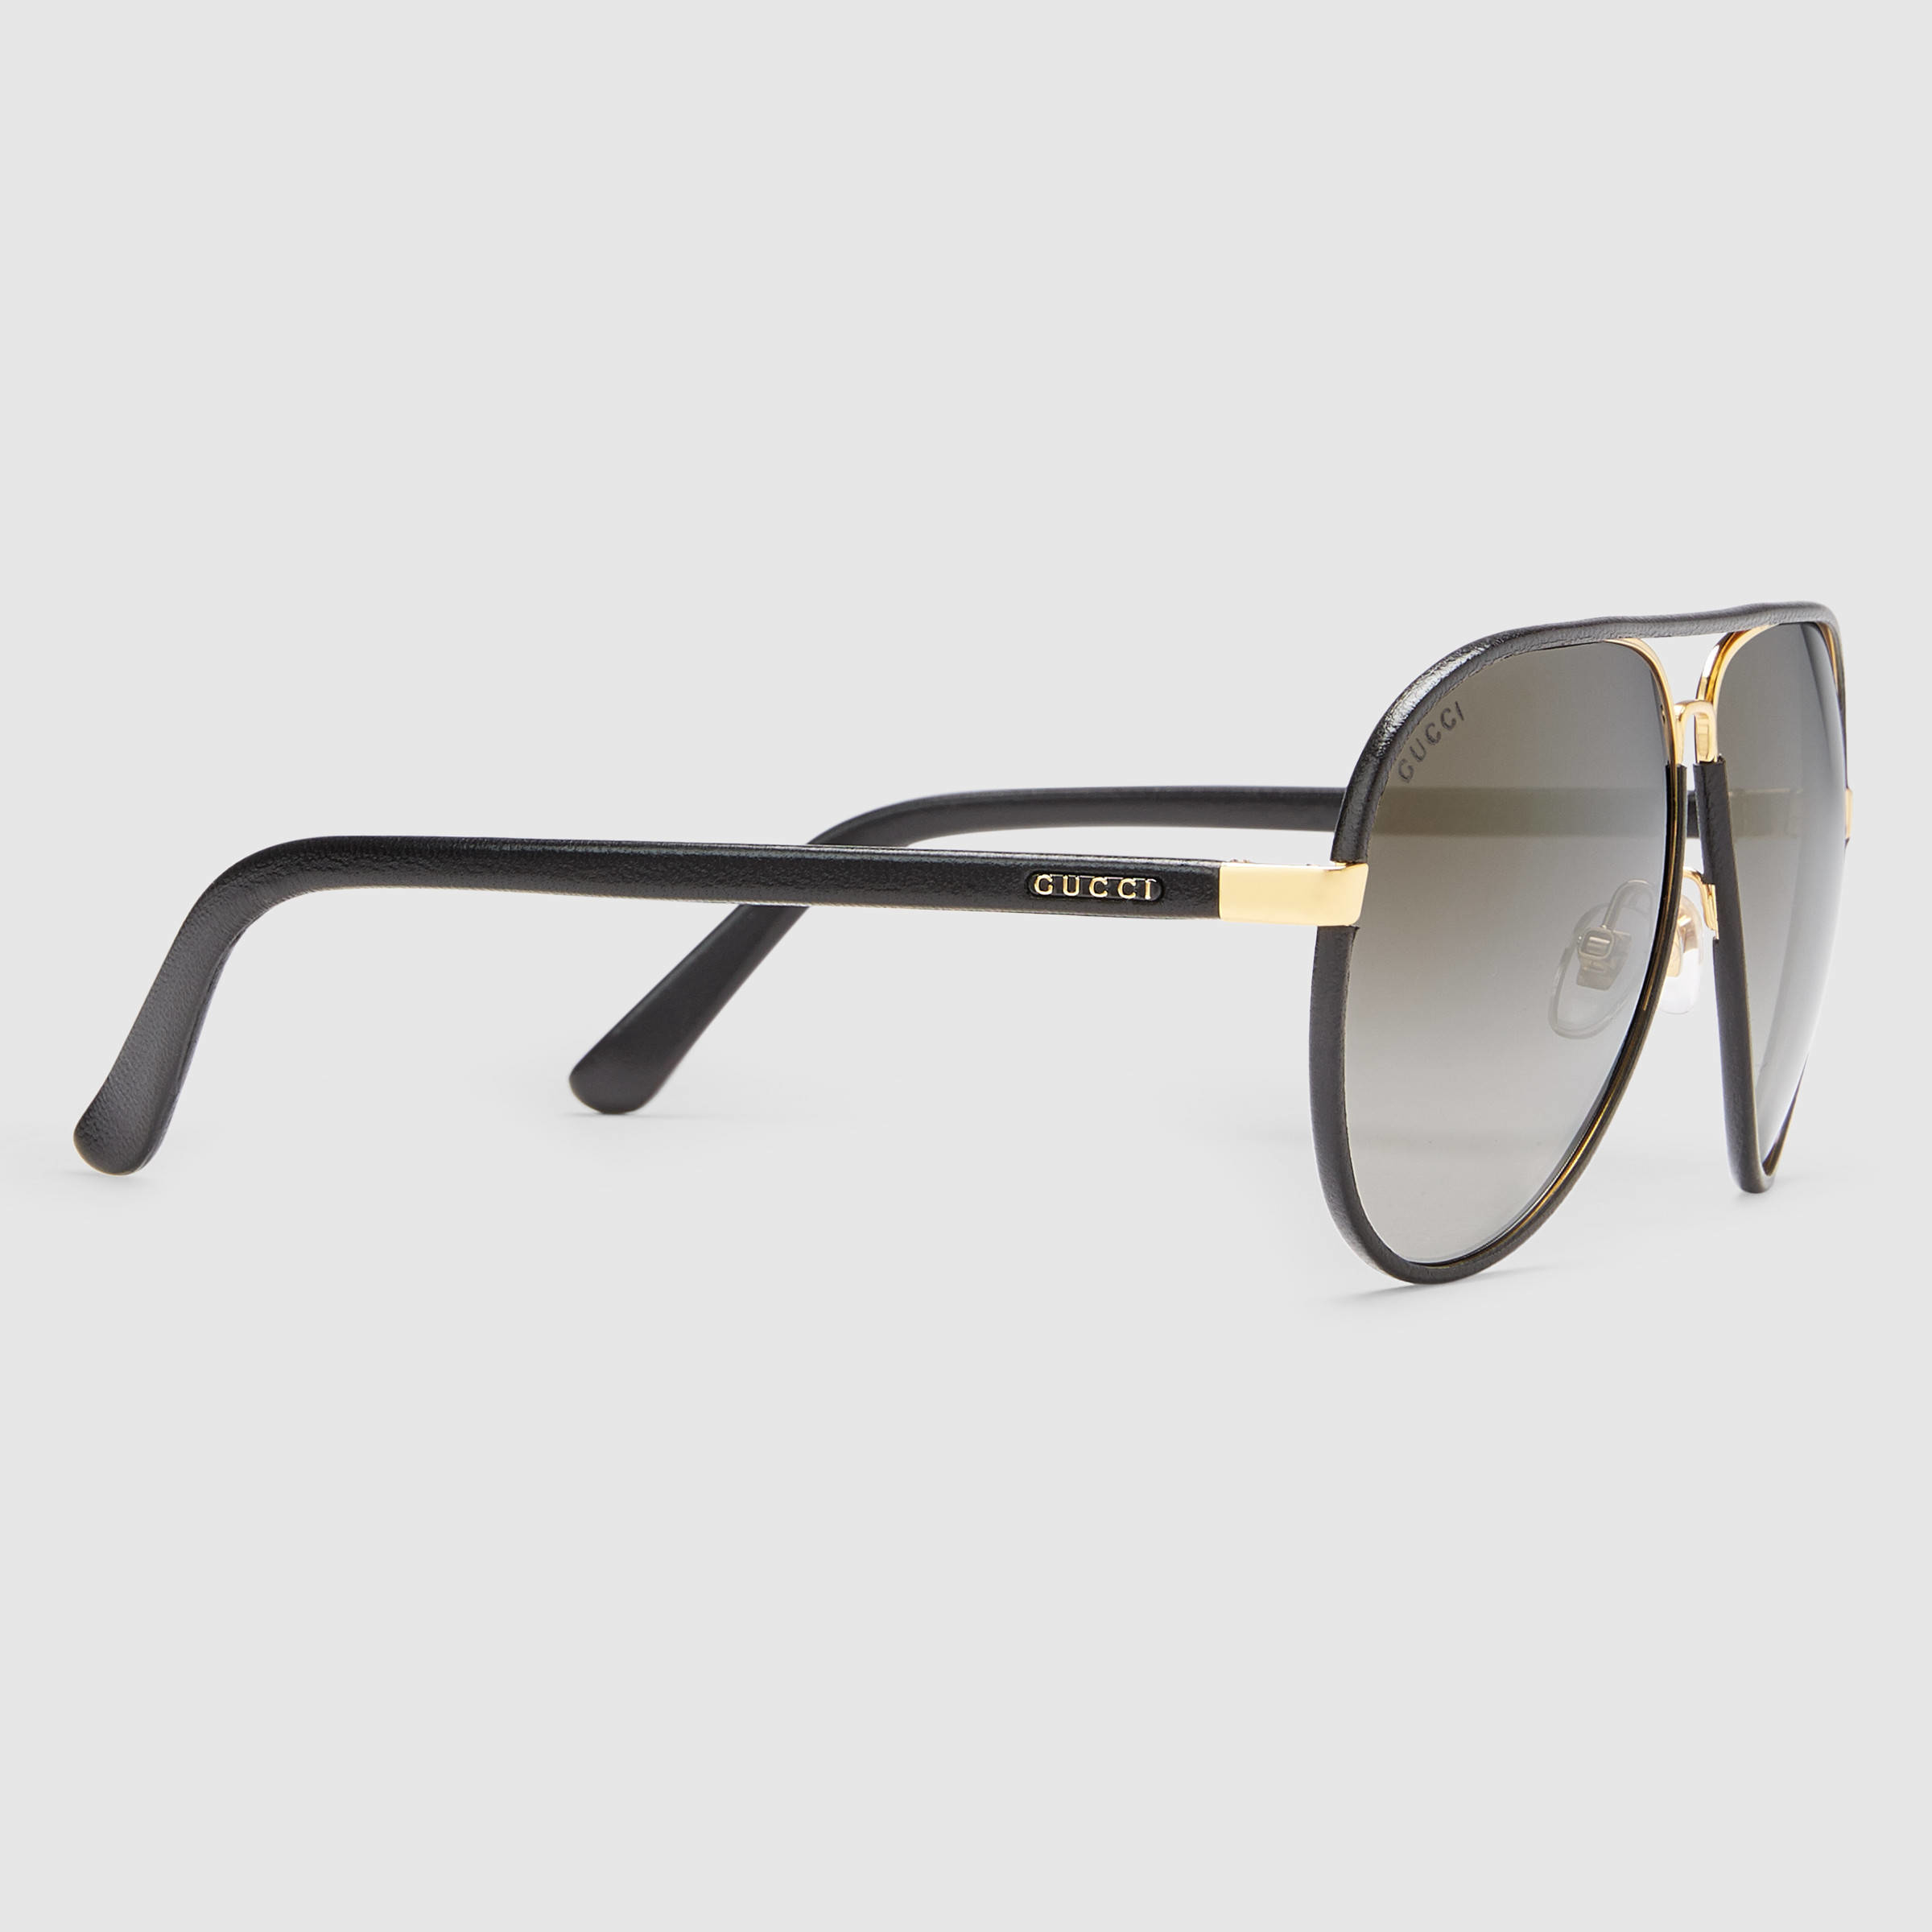 Gucci Leather Aviator Sunglasses in 